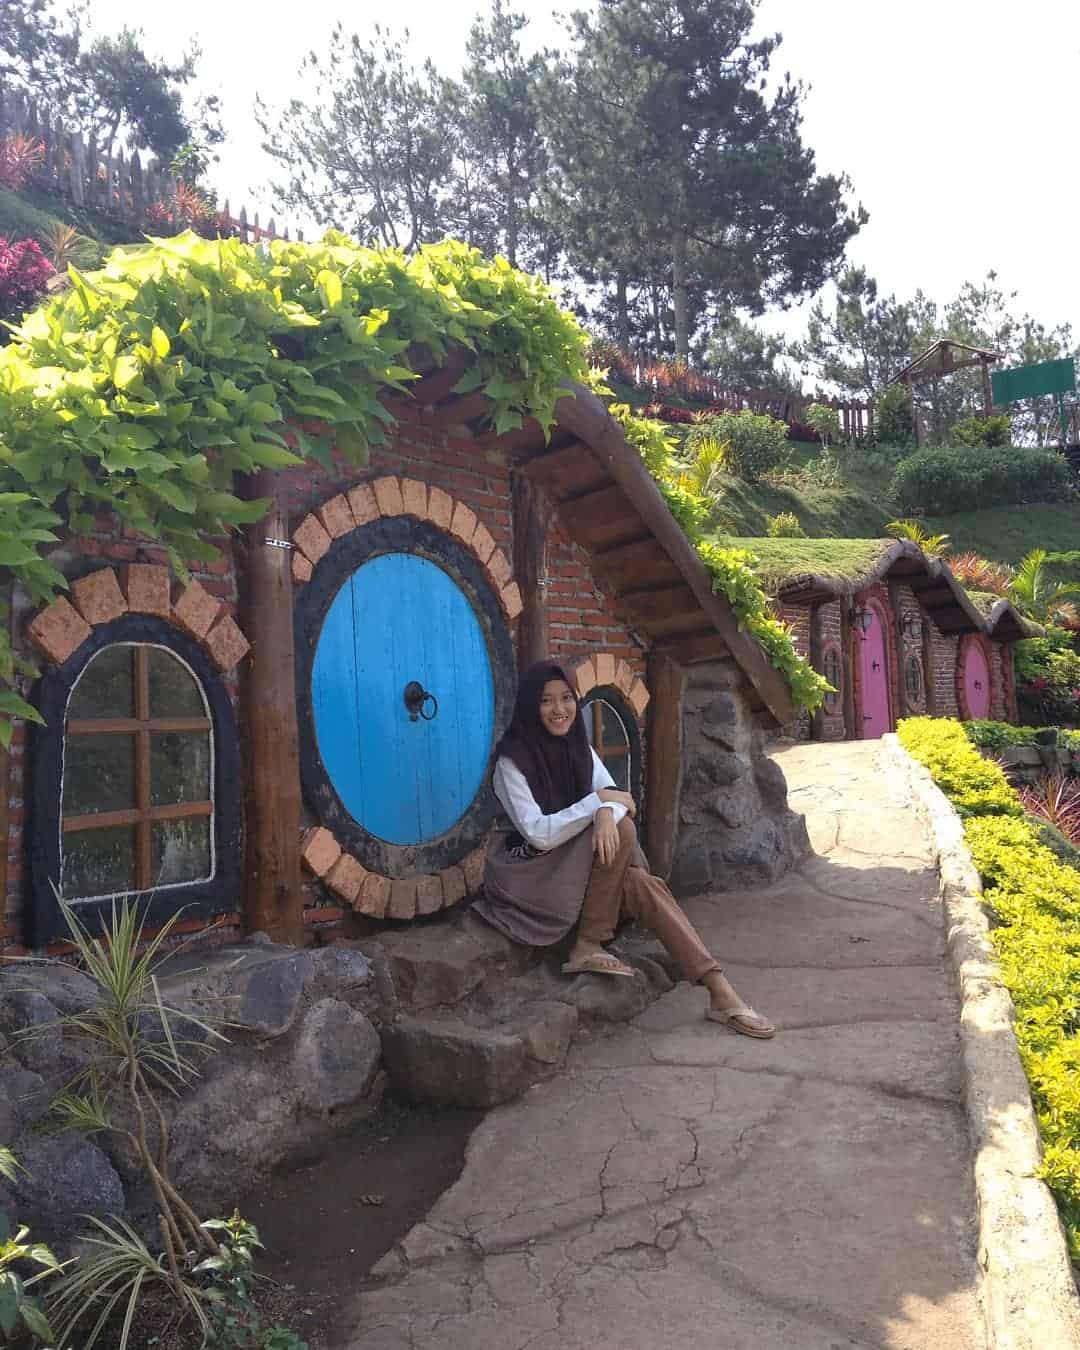 Rumah Hobbit Coban Rais, Wisata Ala Suasana Desa Hobbit!